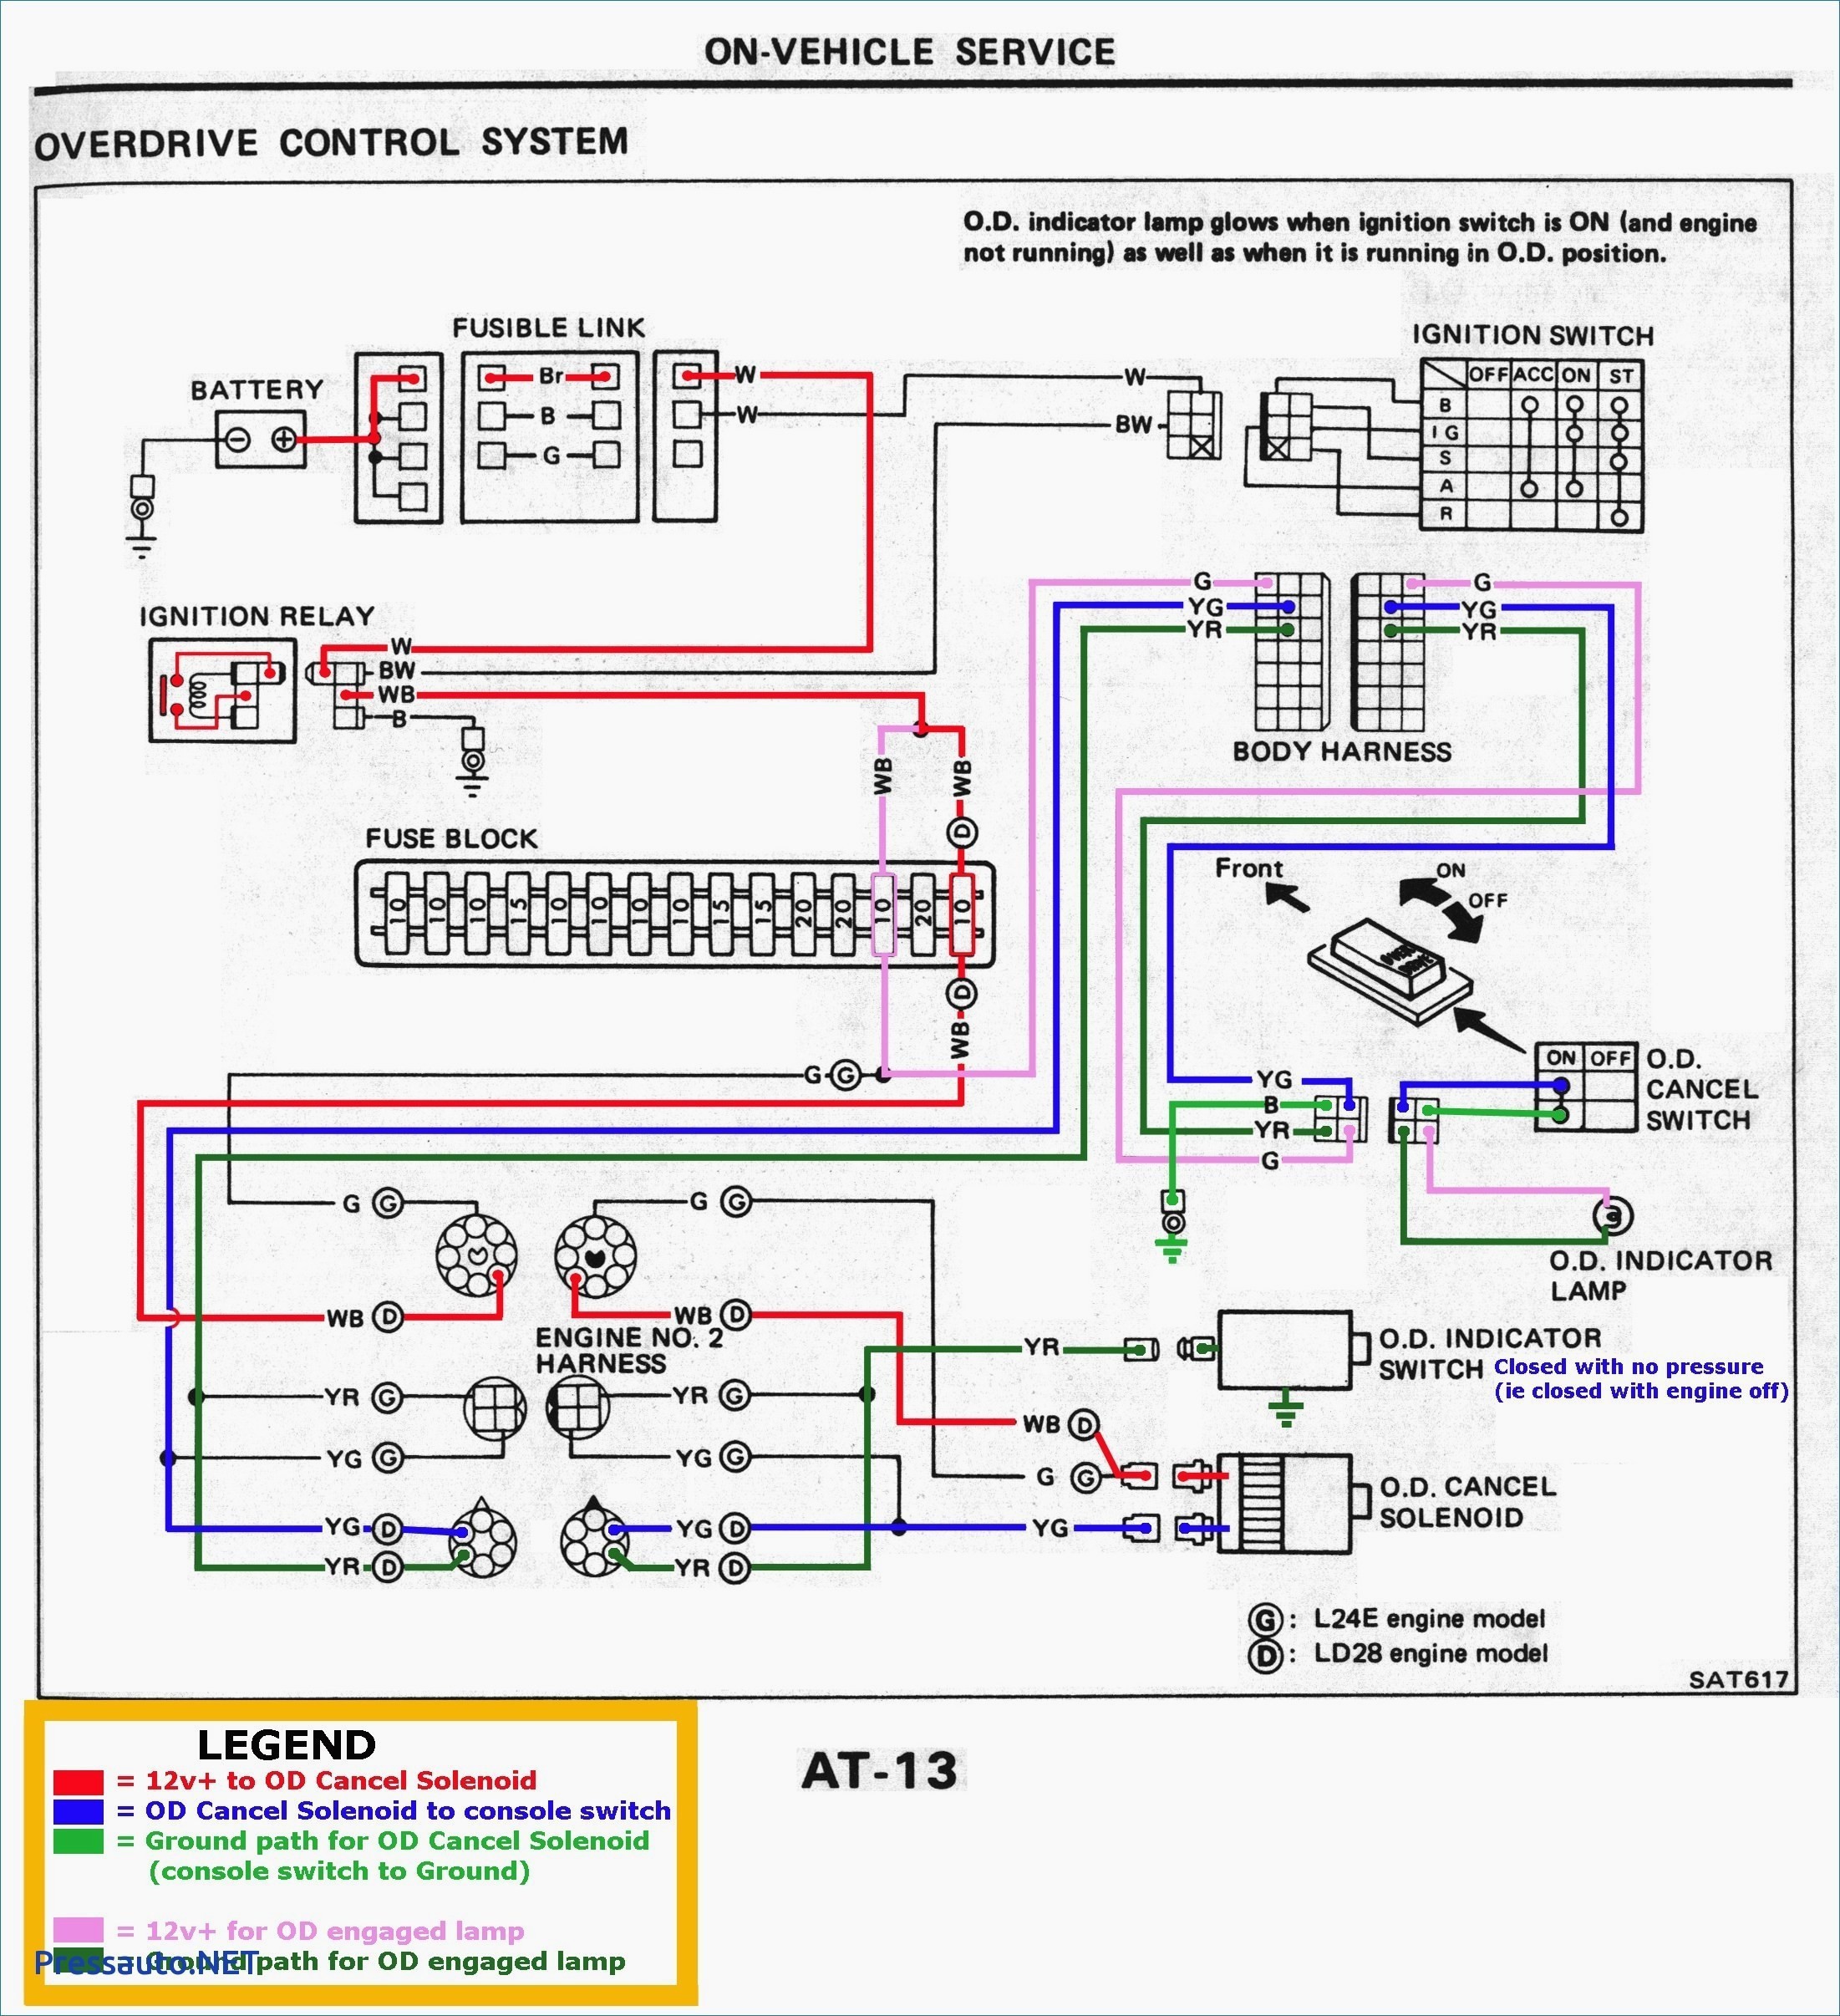 2001 Honda Accord V6 Engine Diagram 2001 Honda Civic Lx Fuse Box Diagram Of 2001 Honda Accord V6 Engine Diagram